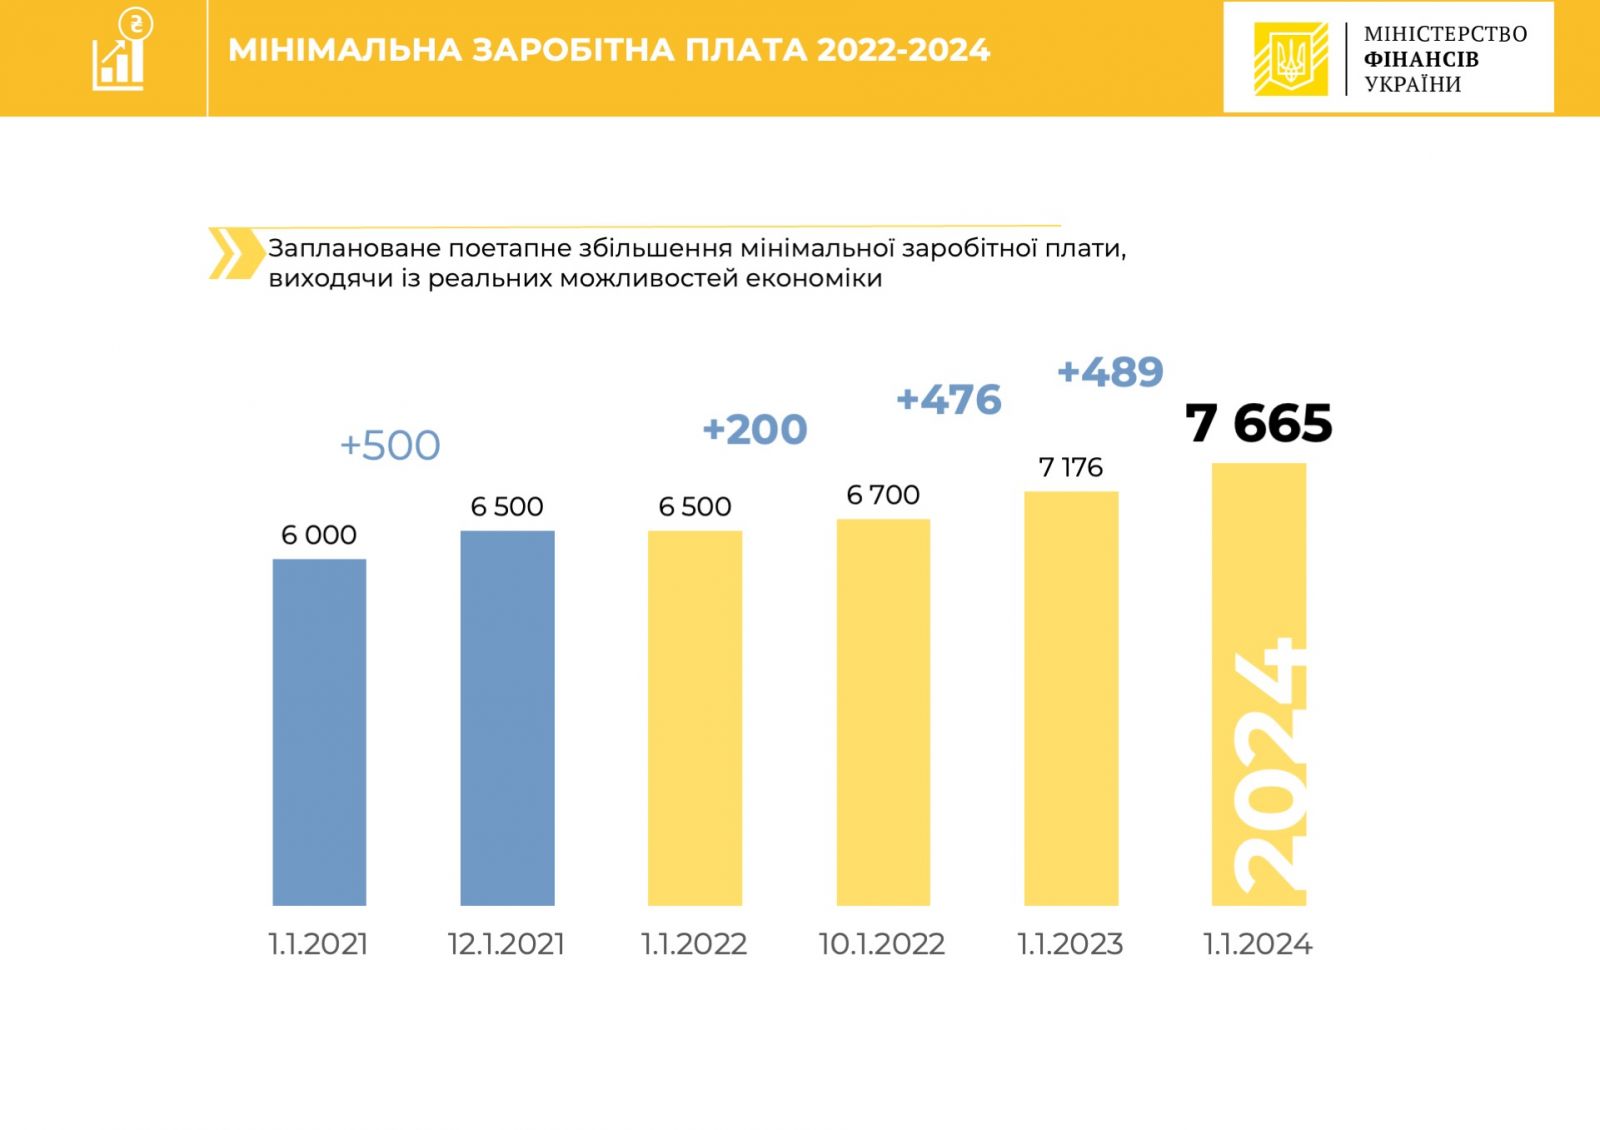 Заработная плата в министерстве финансов. Зарплата в Министерстве финансов. Украина 2022 год. Украина 2024 год. Розмір Мінімальної заробітної плати.